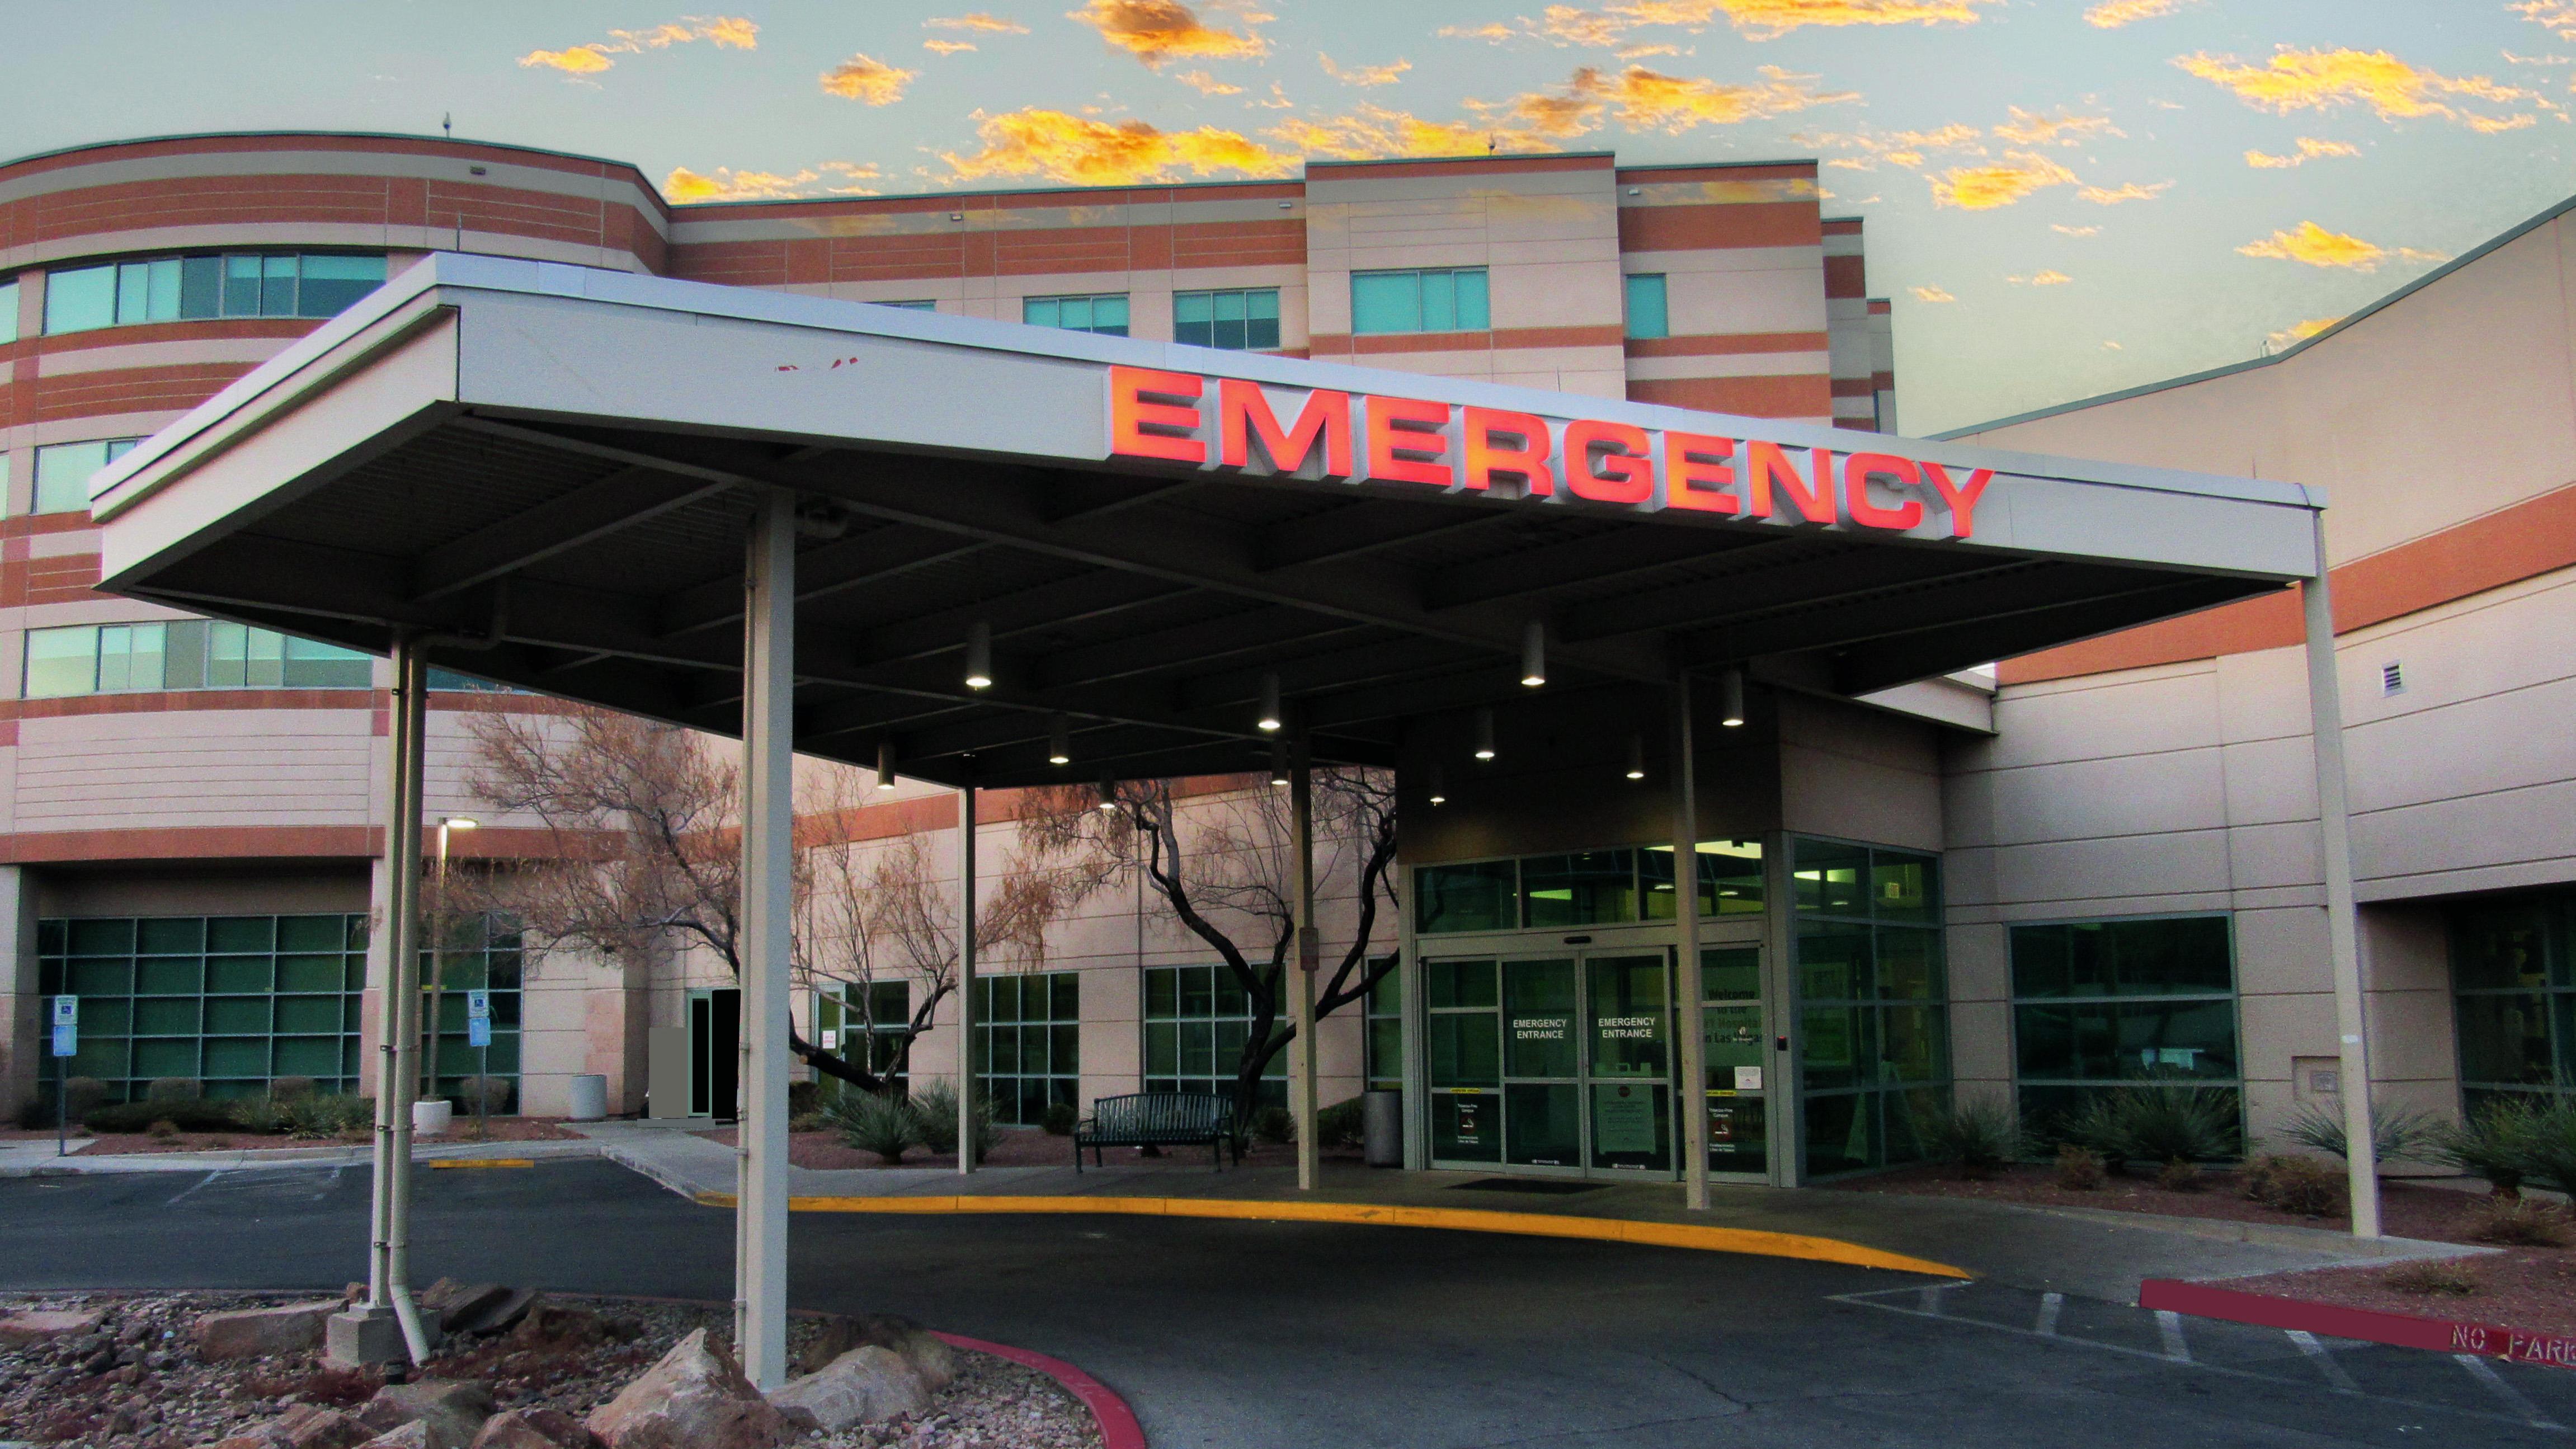 Entrance to ER at Desert Springs